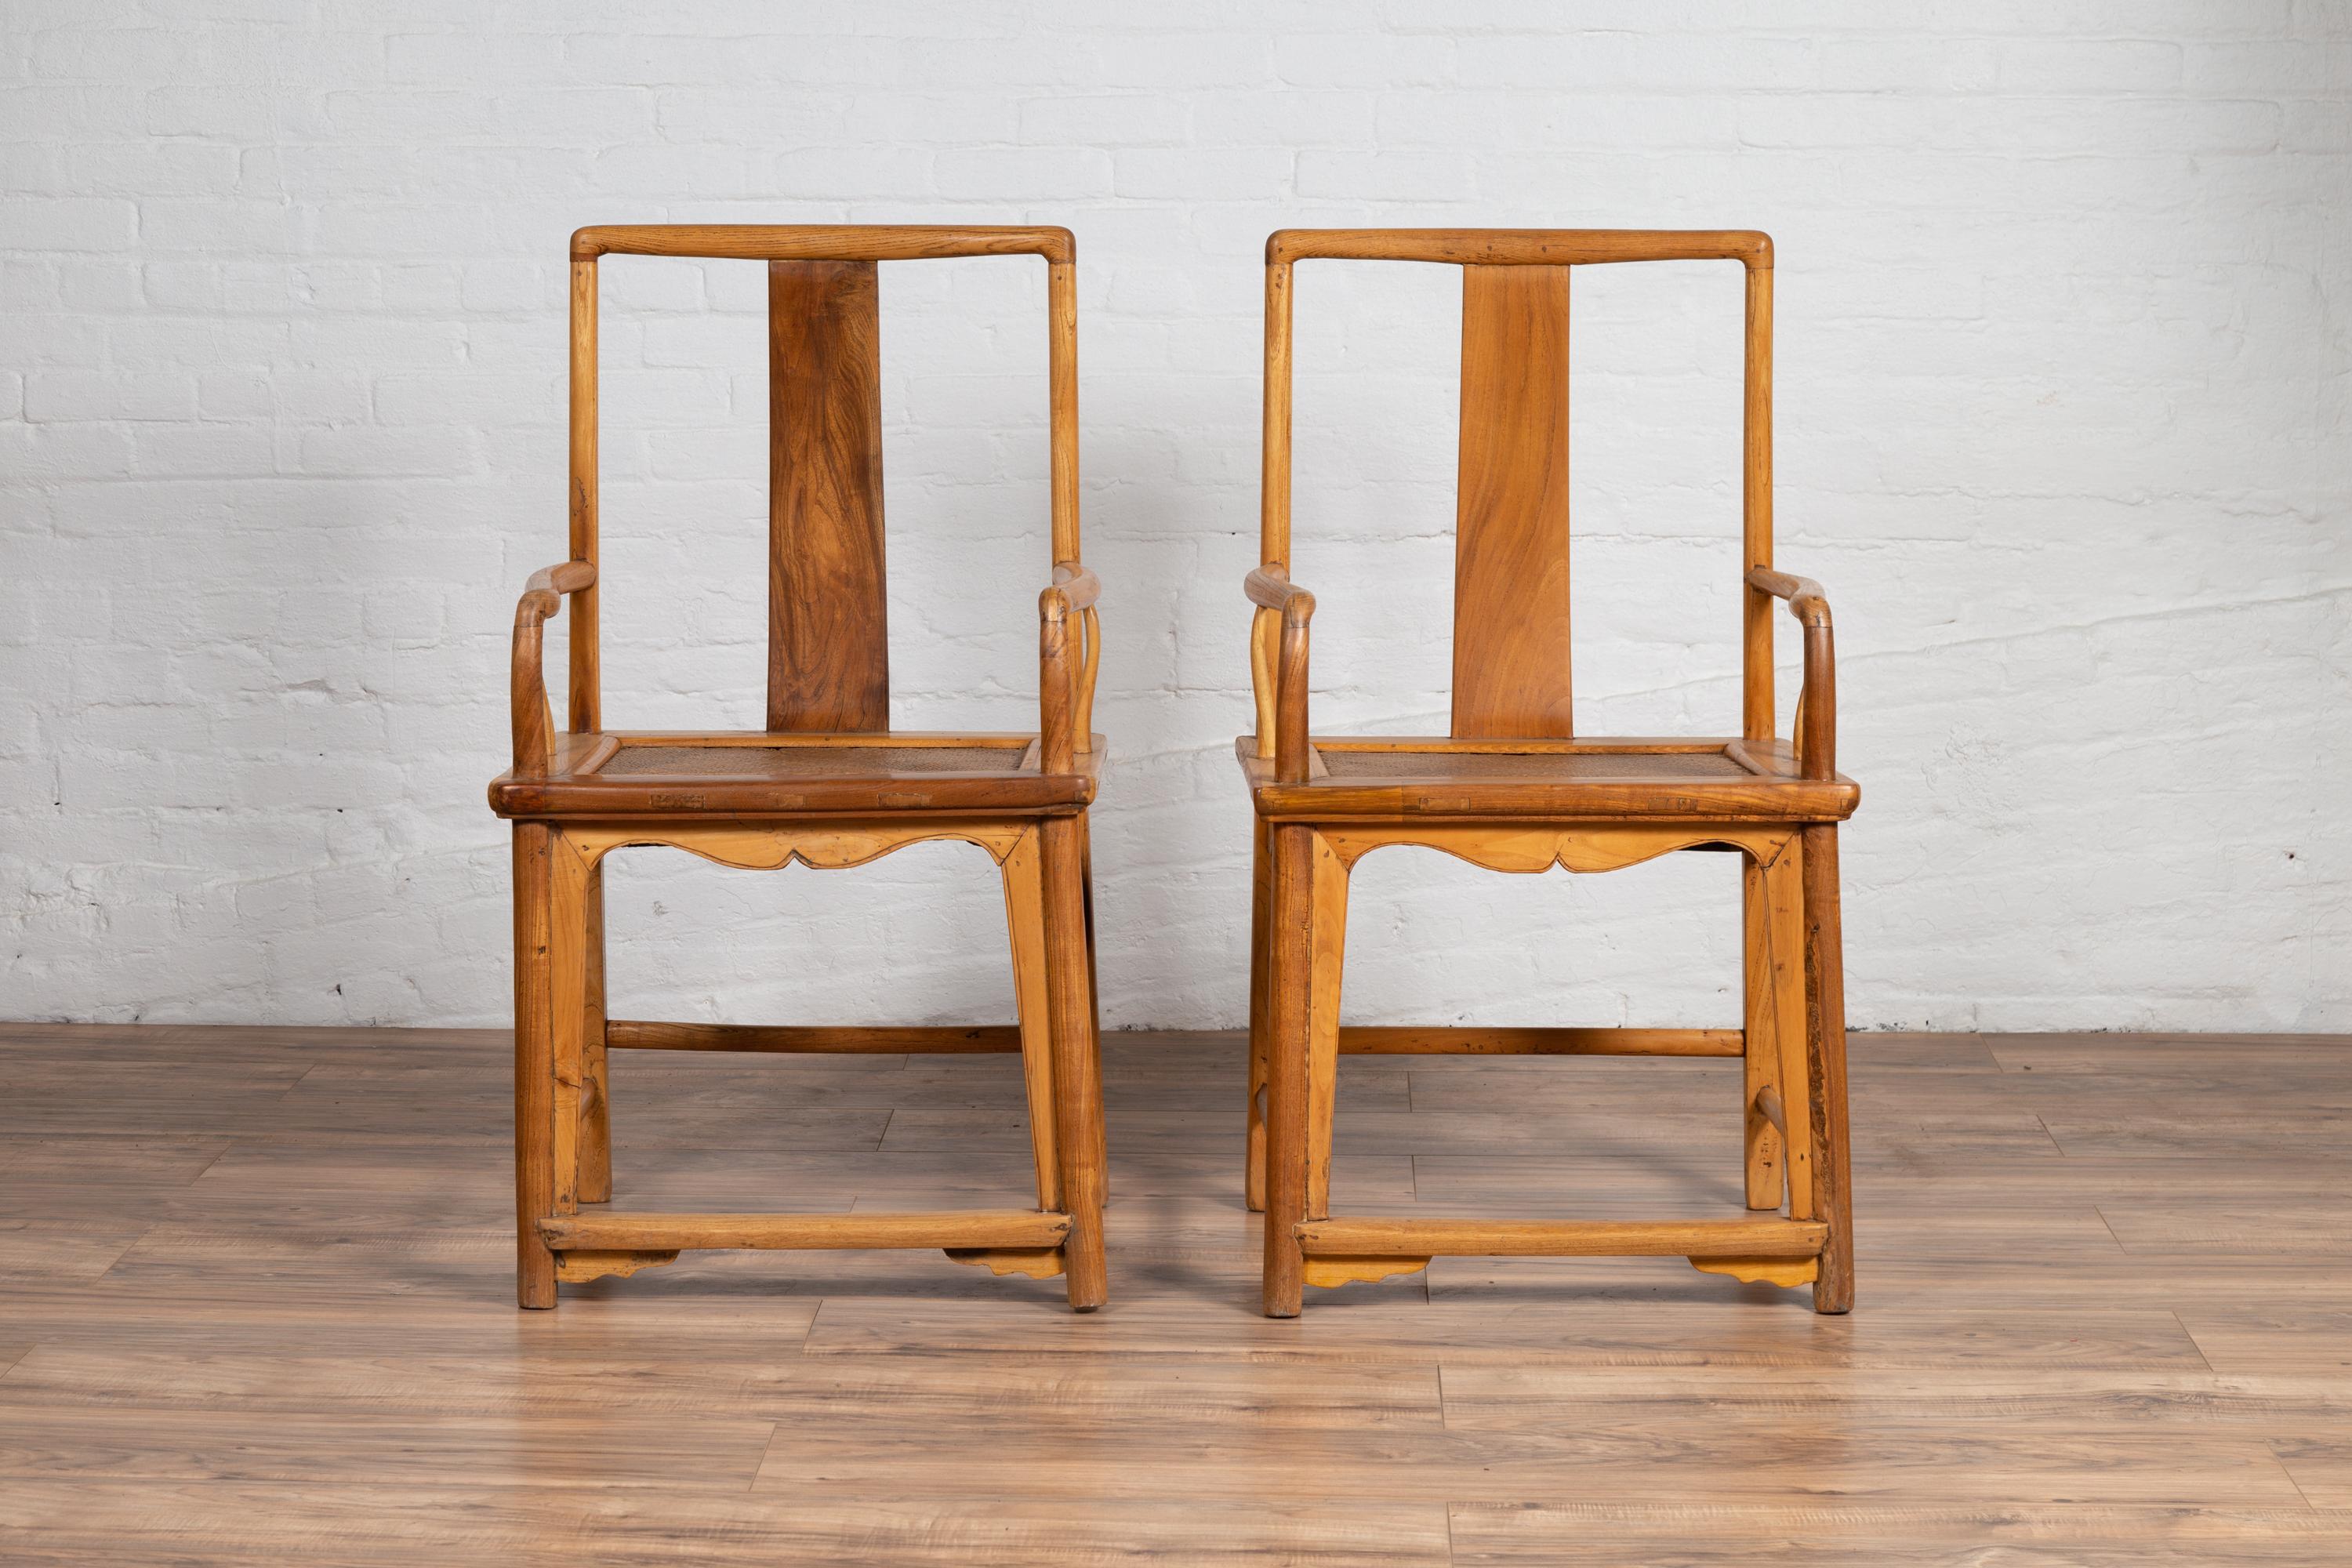 Une proche paire de fauteuils de mariage vintage de style dynastie Ming chinoise du milieu du 20e siècle, avec des sièges en rotin tressé, des accoudoirs incurvés et une patine naturelle du bois. Nés en Chine au milieu du siècle dernier, les